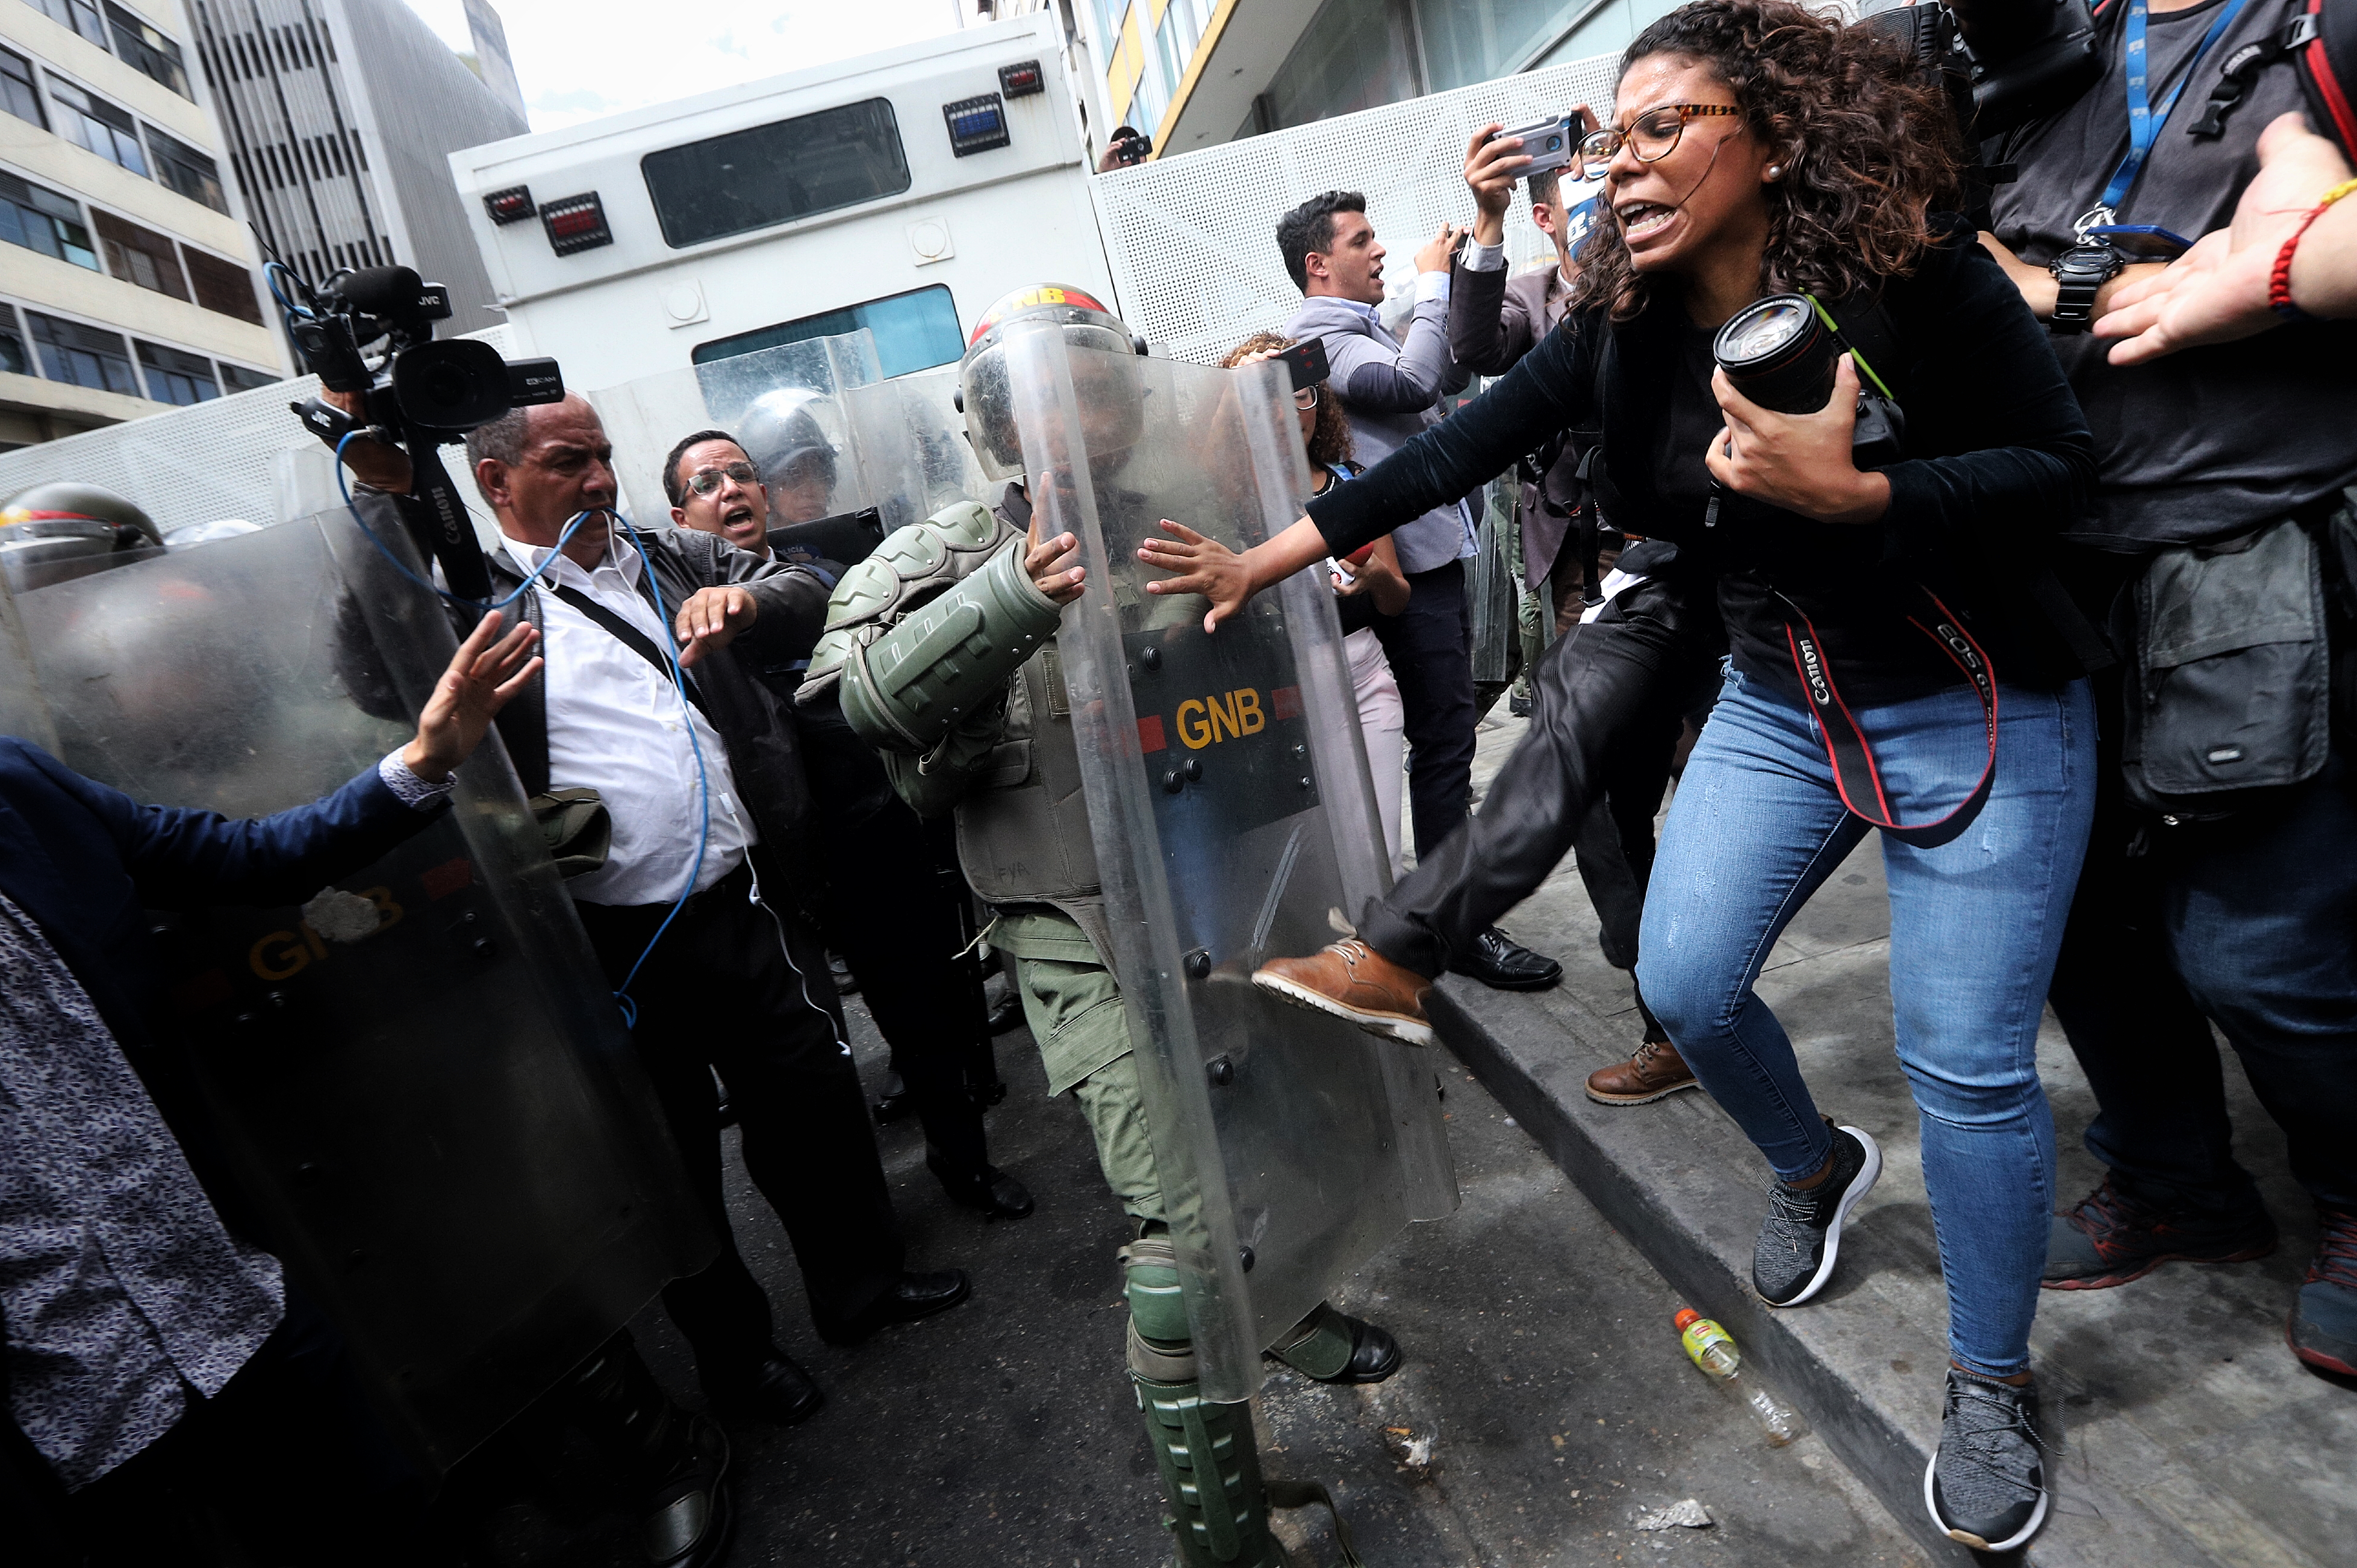 Las imágenes que dan la vuelta al mundo del Golpe del régimen de Maduro a la AN #5Ene